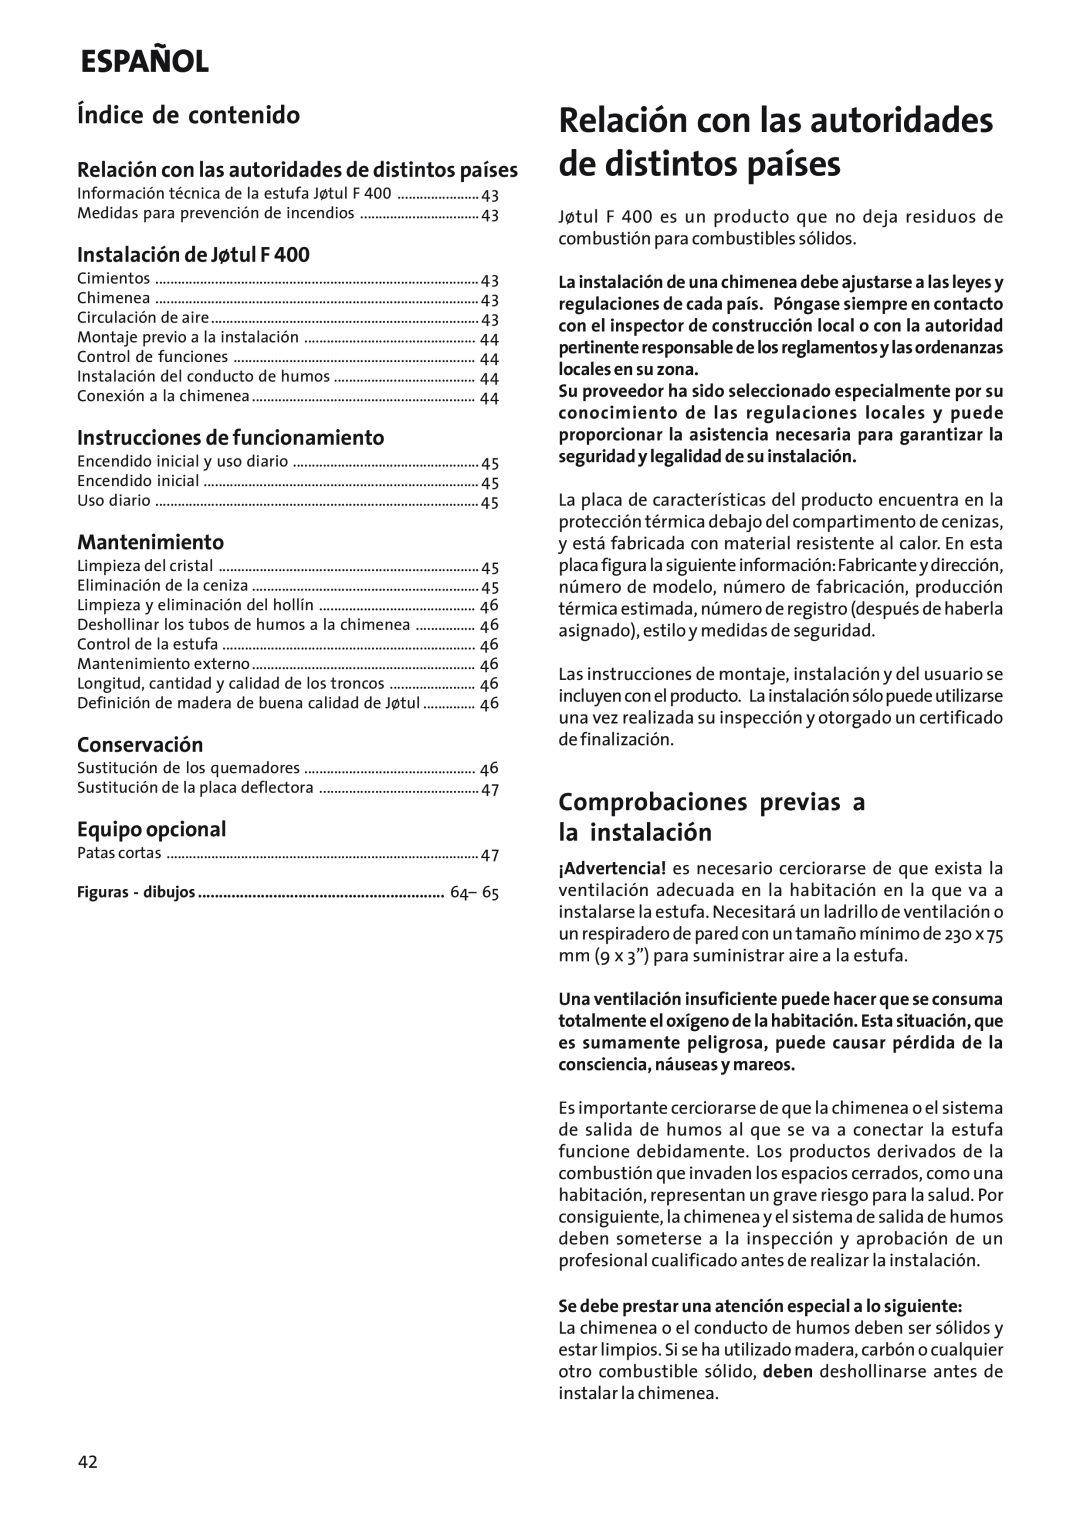 Jotul Woodstove F 400 manual Español, Relación con las autoridades de distintos países, Índice de contenido, Mantenimiento 